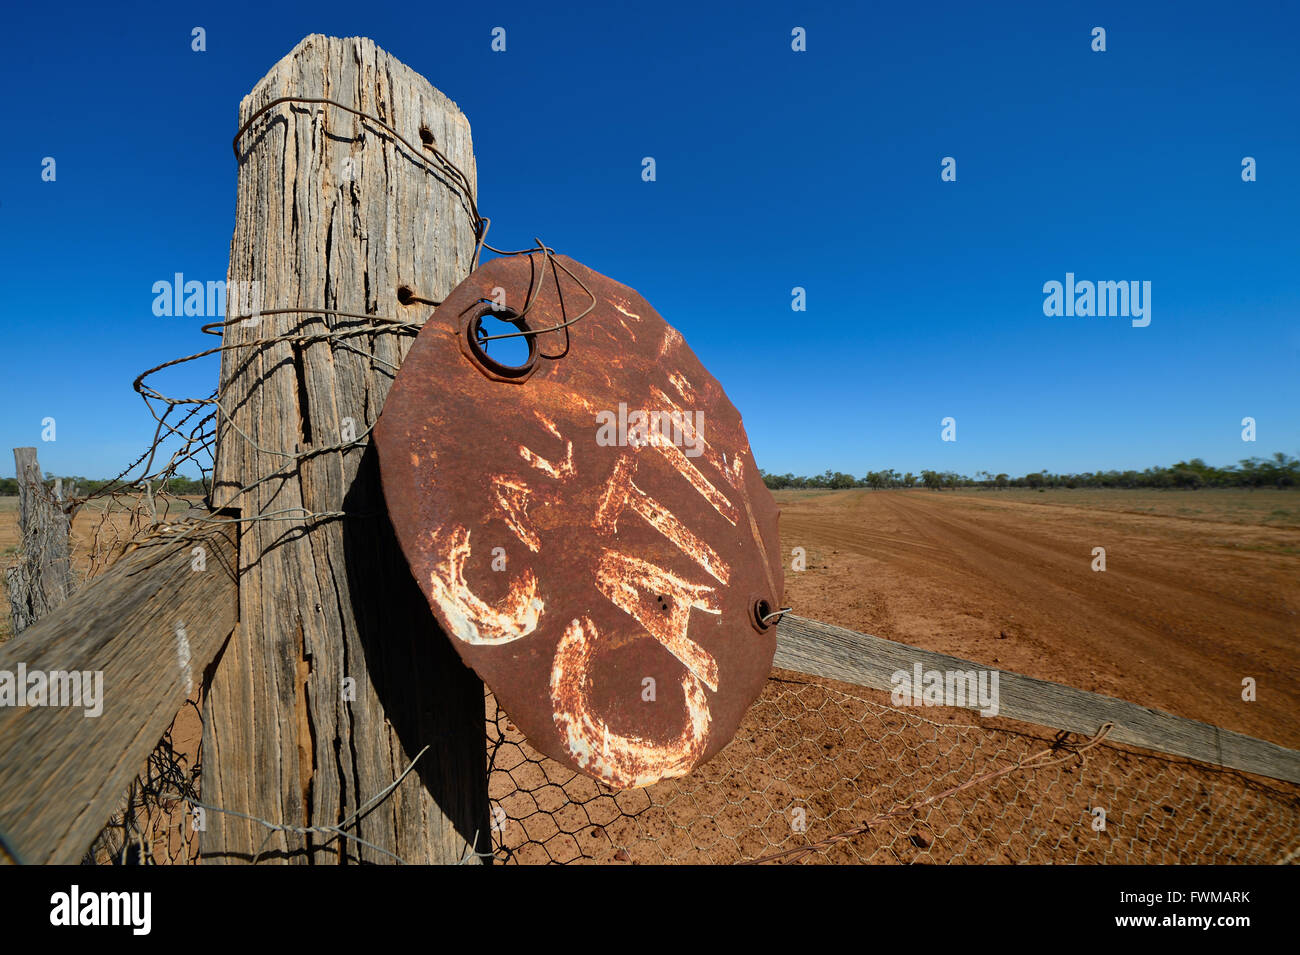 L'Avertissement des bovins signe fait du haut d'un tambour à huile câblé à une clôture dans l'arrière-pays australien Banque D'Images